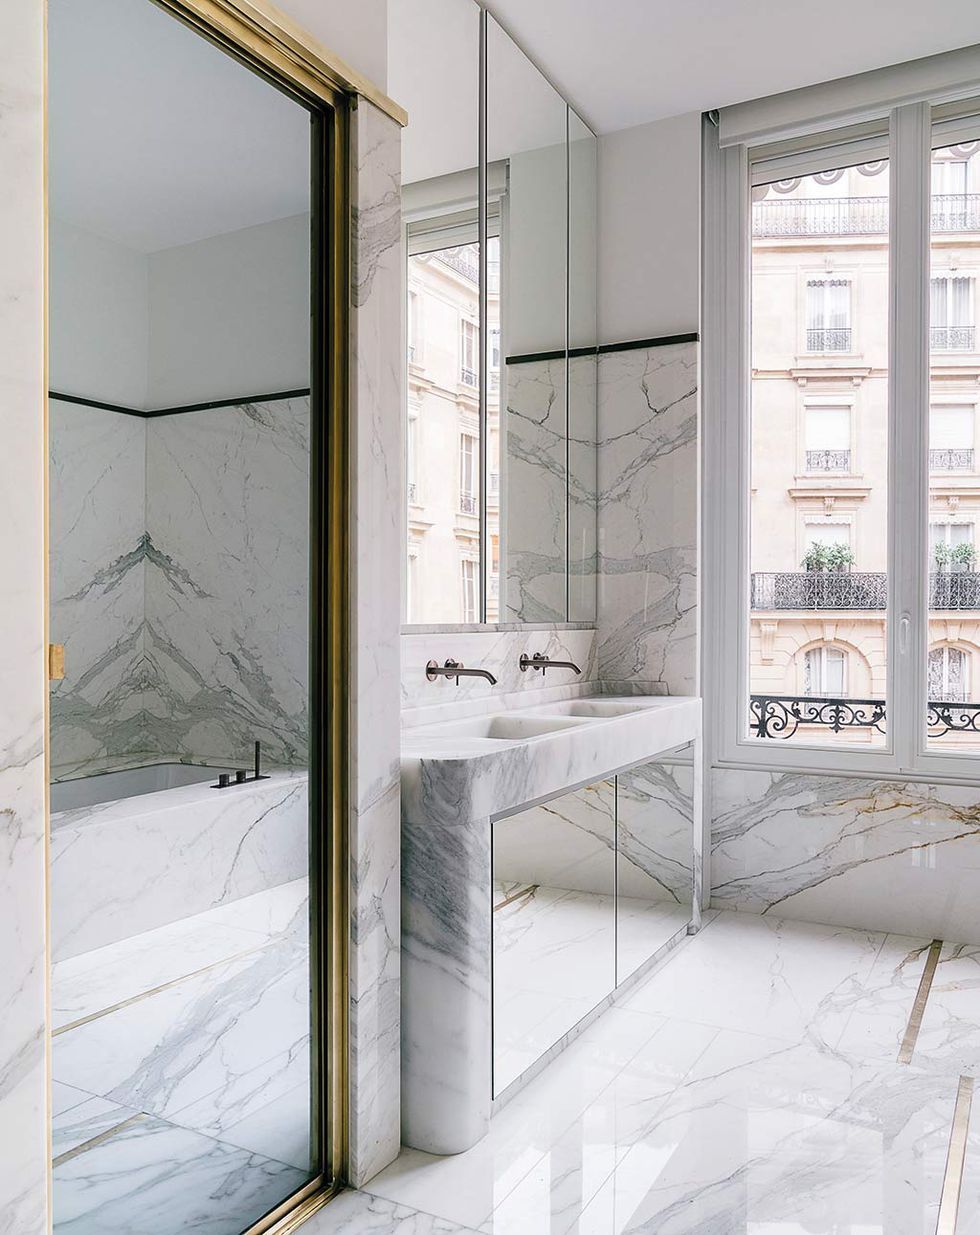 Parisian bathroom decor in White Marble via Claude Missir